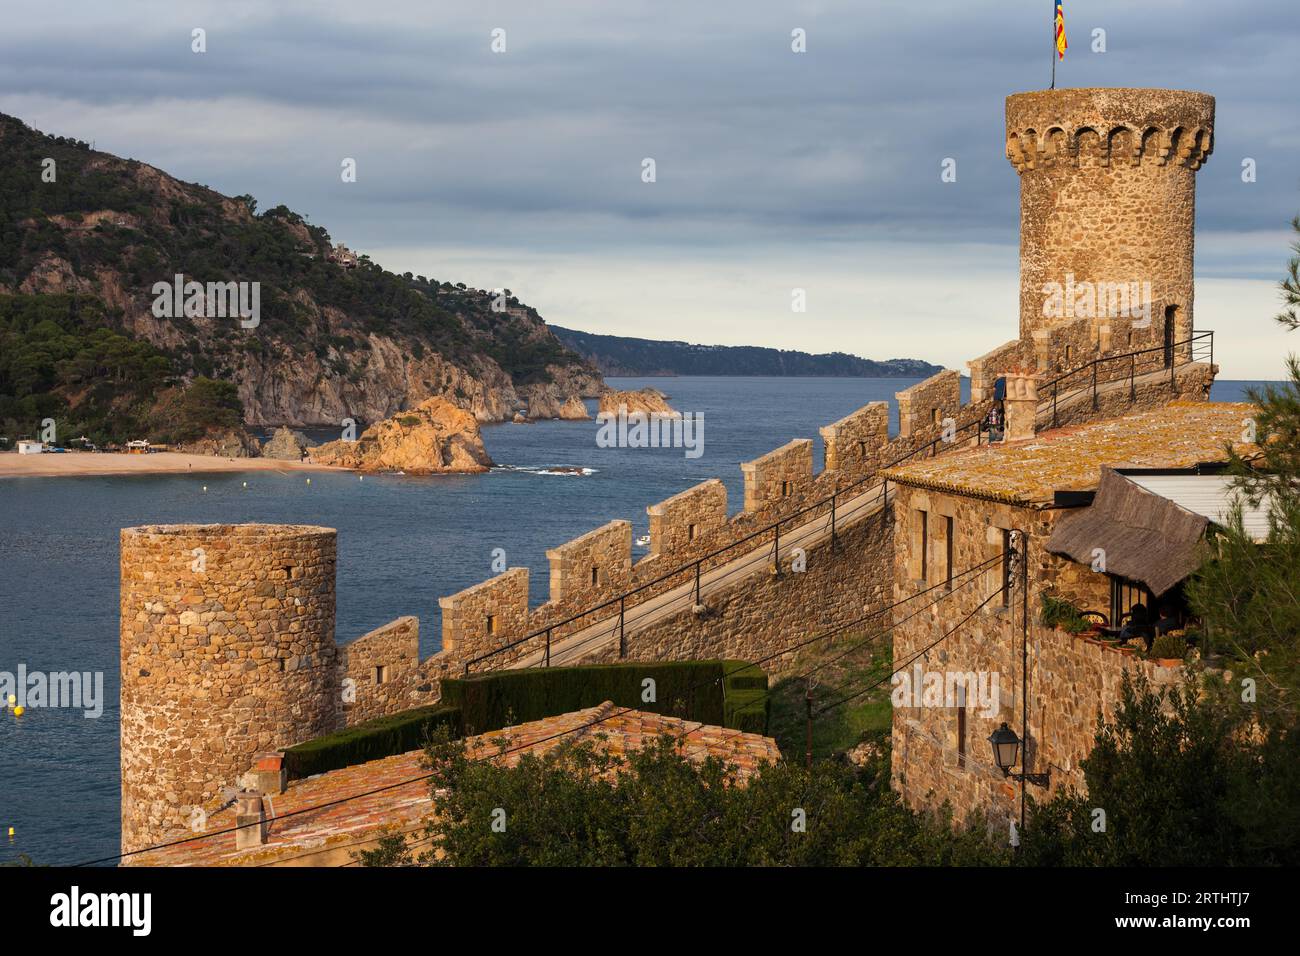 Espagne, Costa Brava, Tossa de Mar, tours et balustrade, 14e siècle de la vieille ville médiévale fortifiée (Villa Vella) Banque D'Images